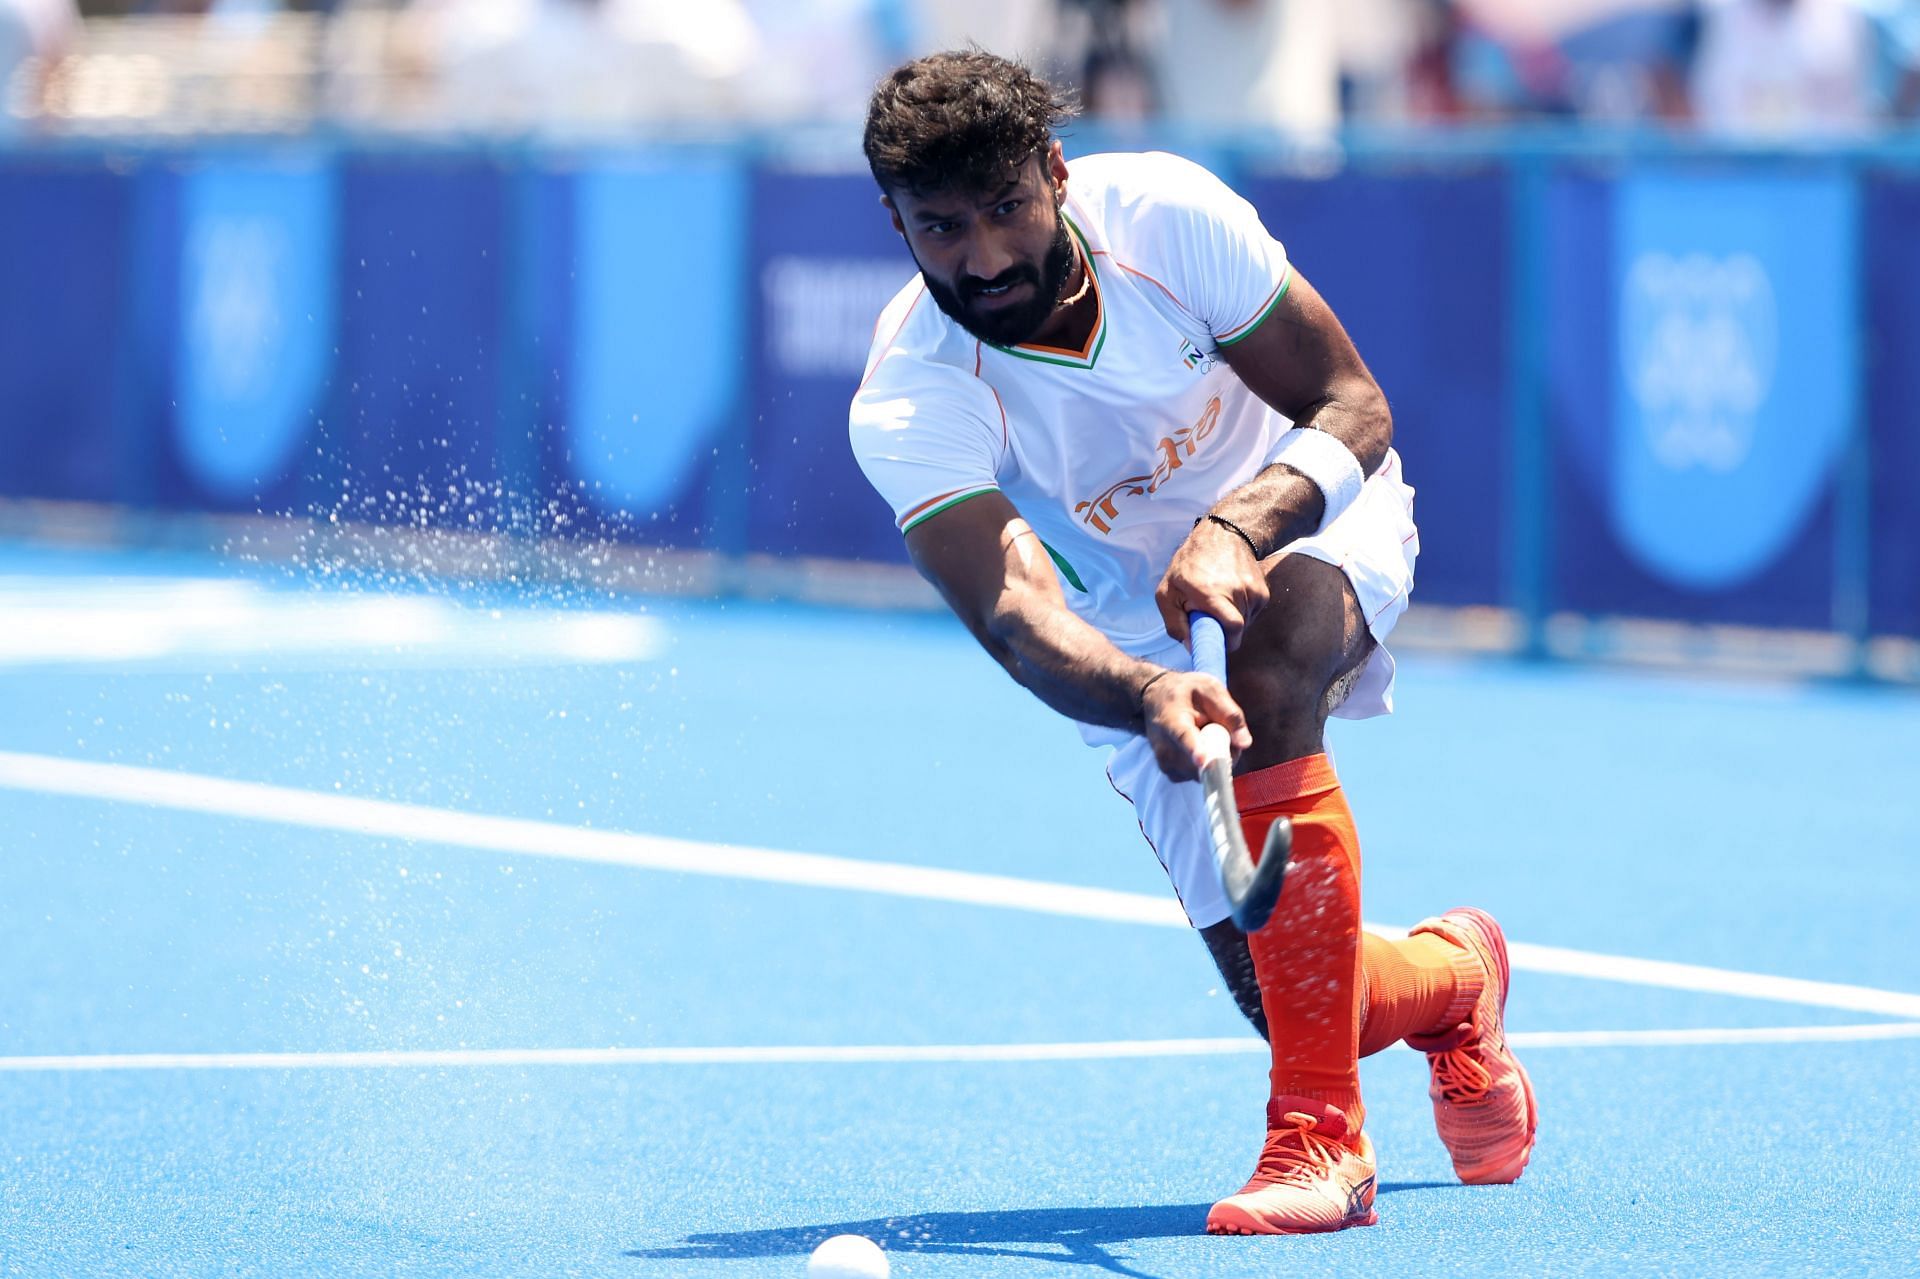 Hockey - Olympics: Defender Surender Kumar in action